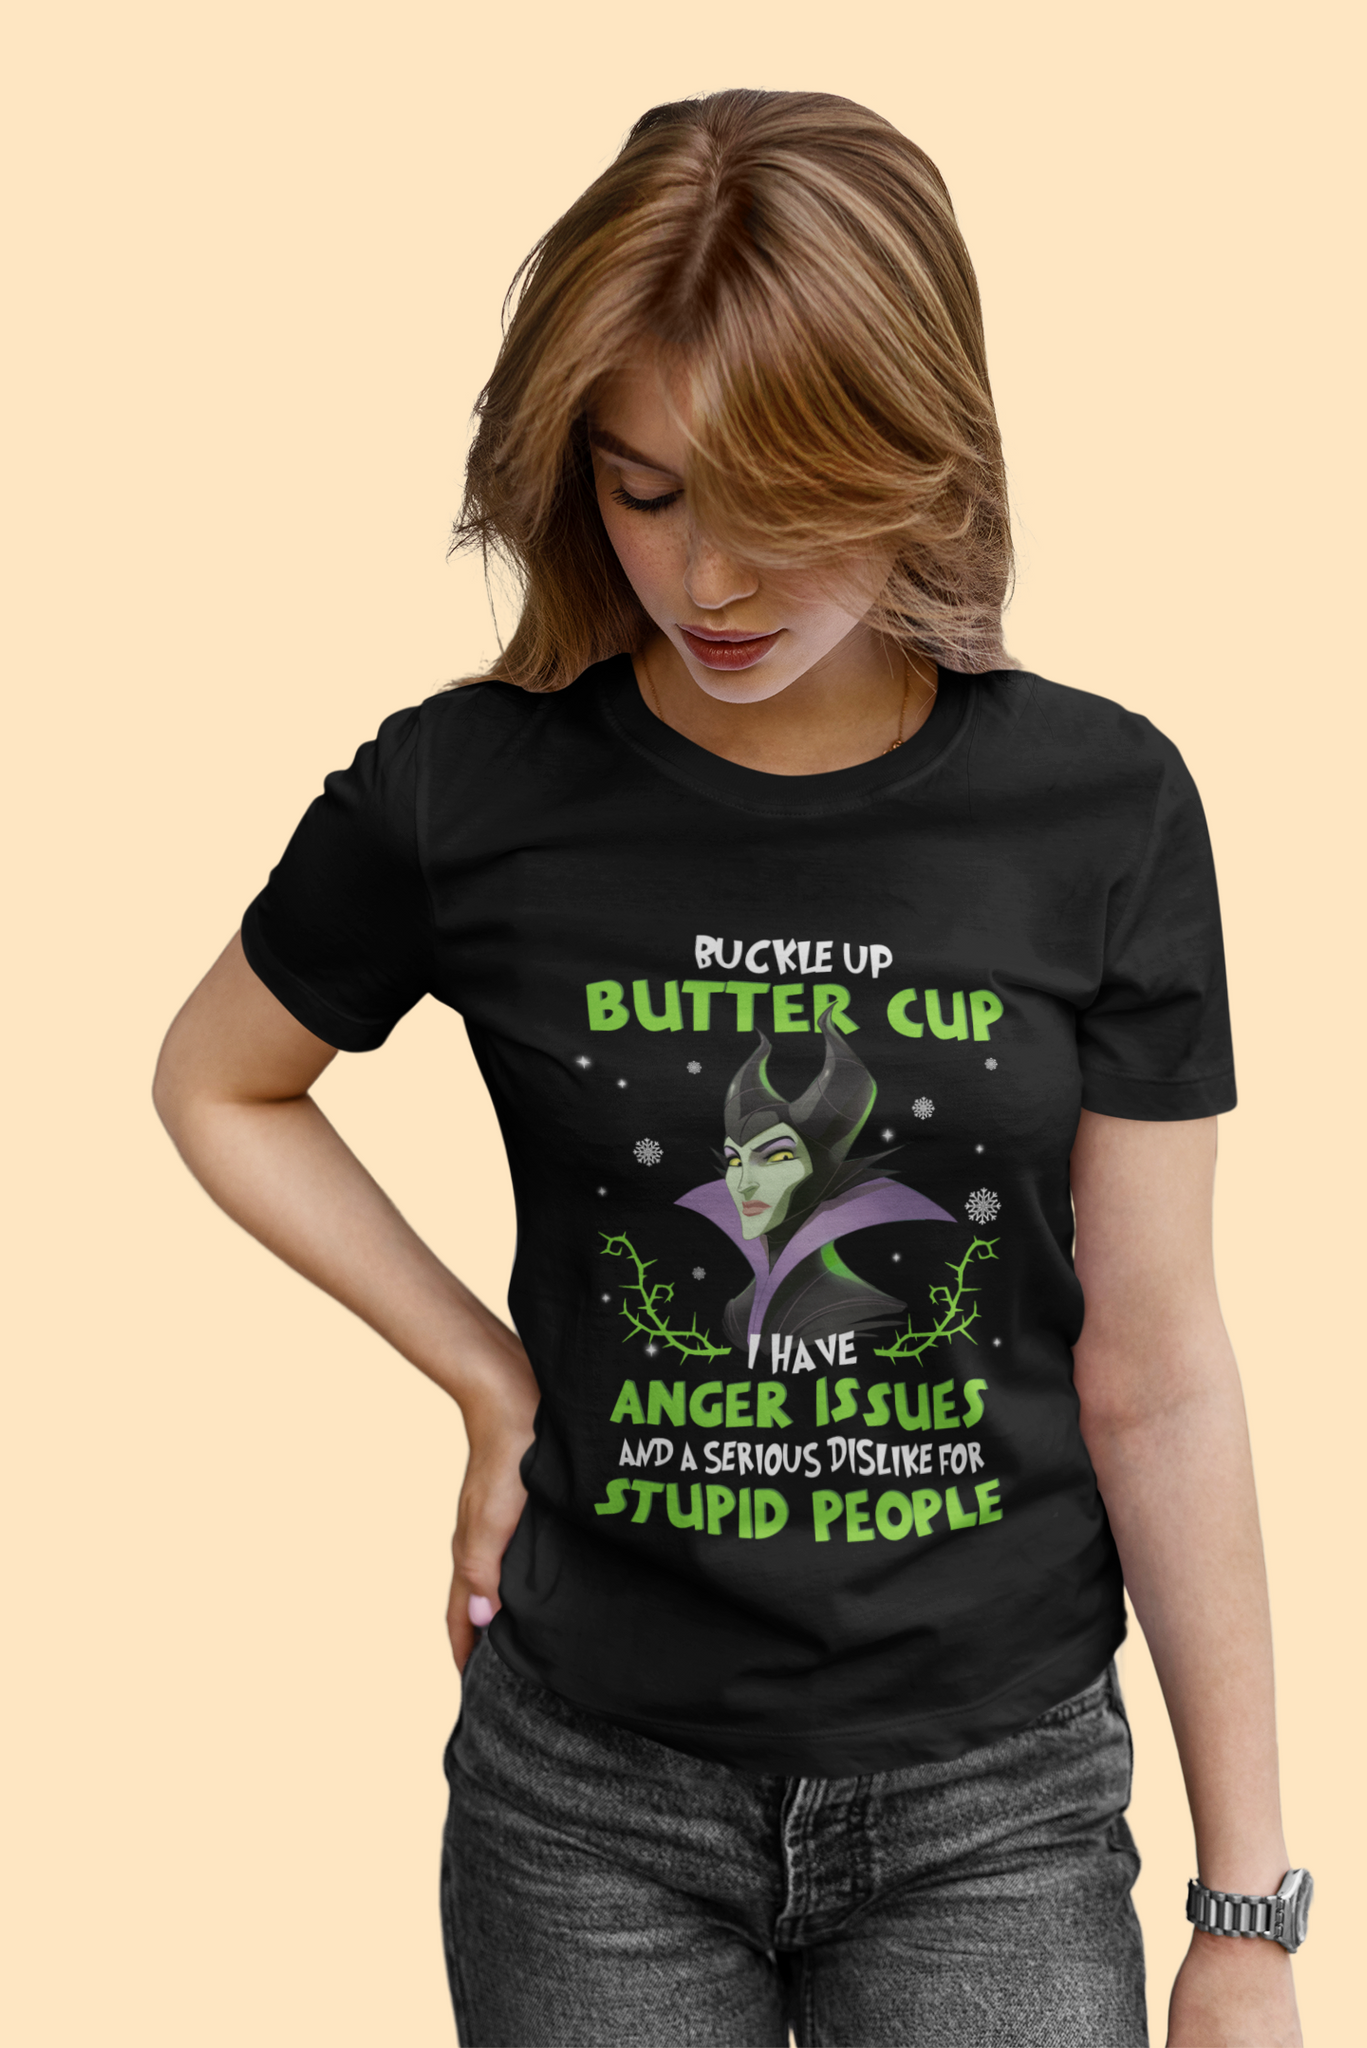 Disney Maleficent T Shirt, Disney Villains T Shirt, Buckle Up Butter Cup Tshirt, Christmas Gifts